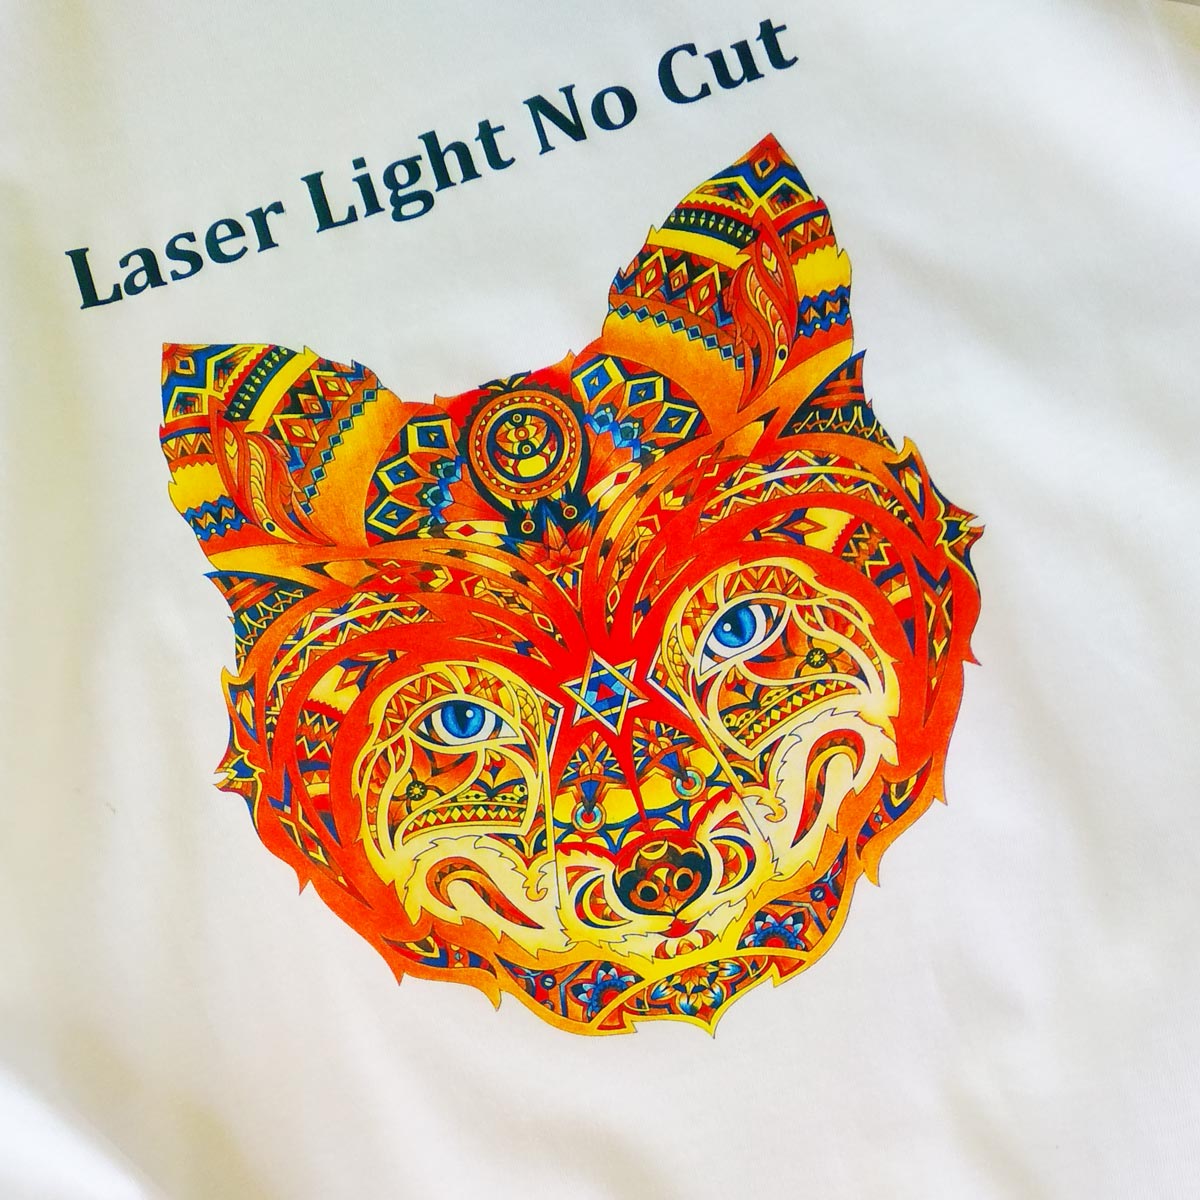 Laser Light No Cut - papier transferowy do drukarek z białym tonerem na jasne tkaniny